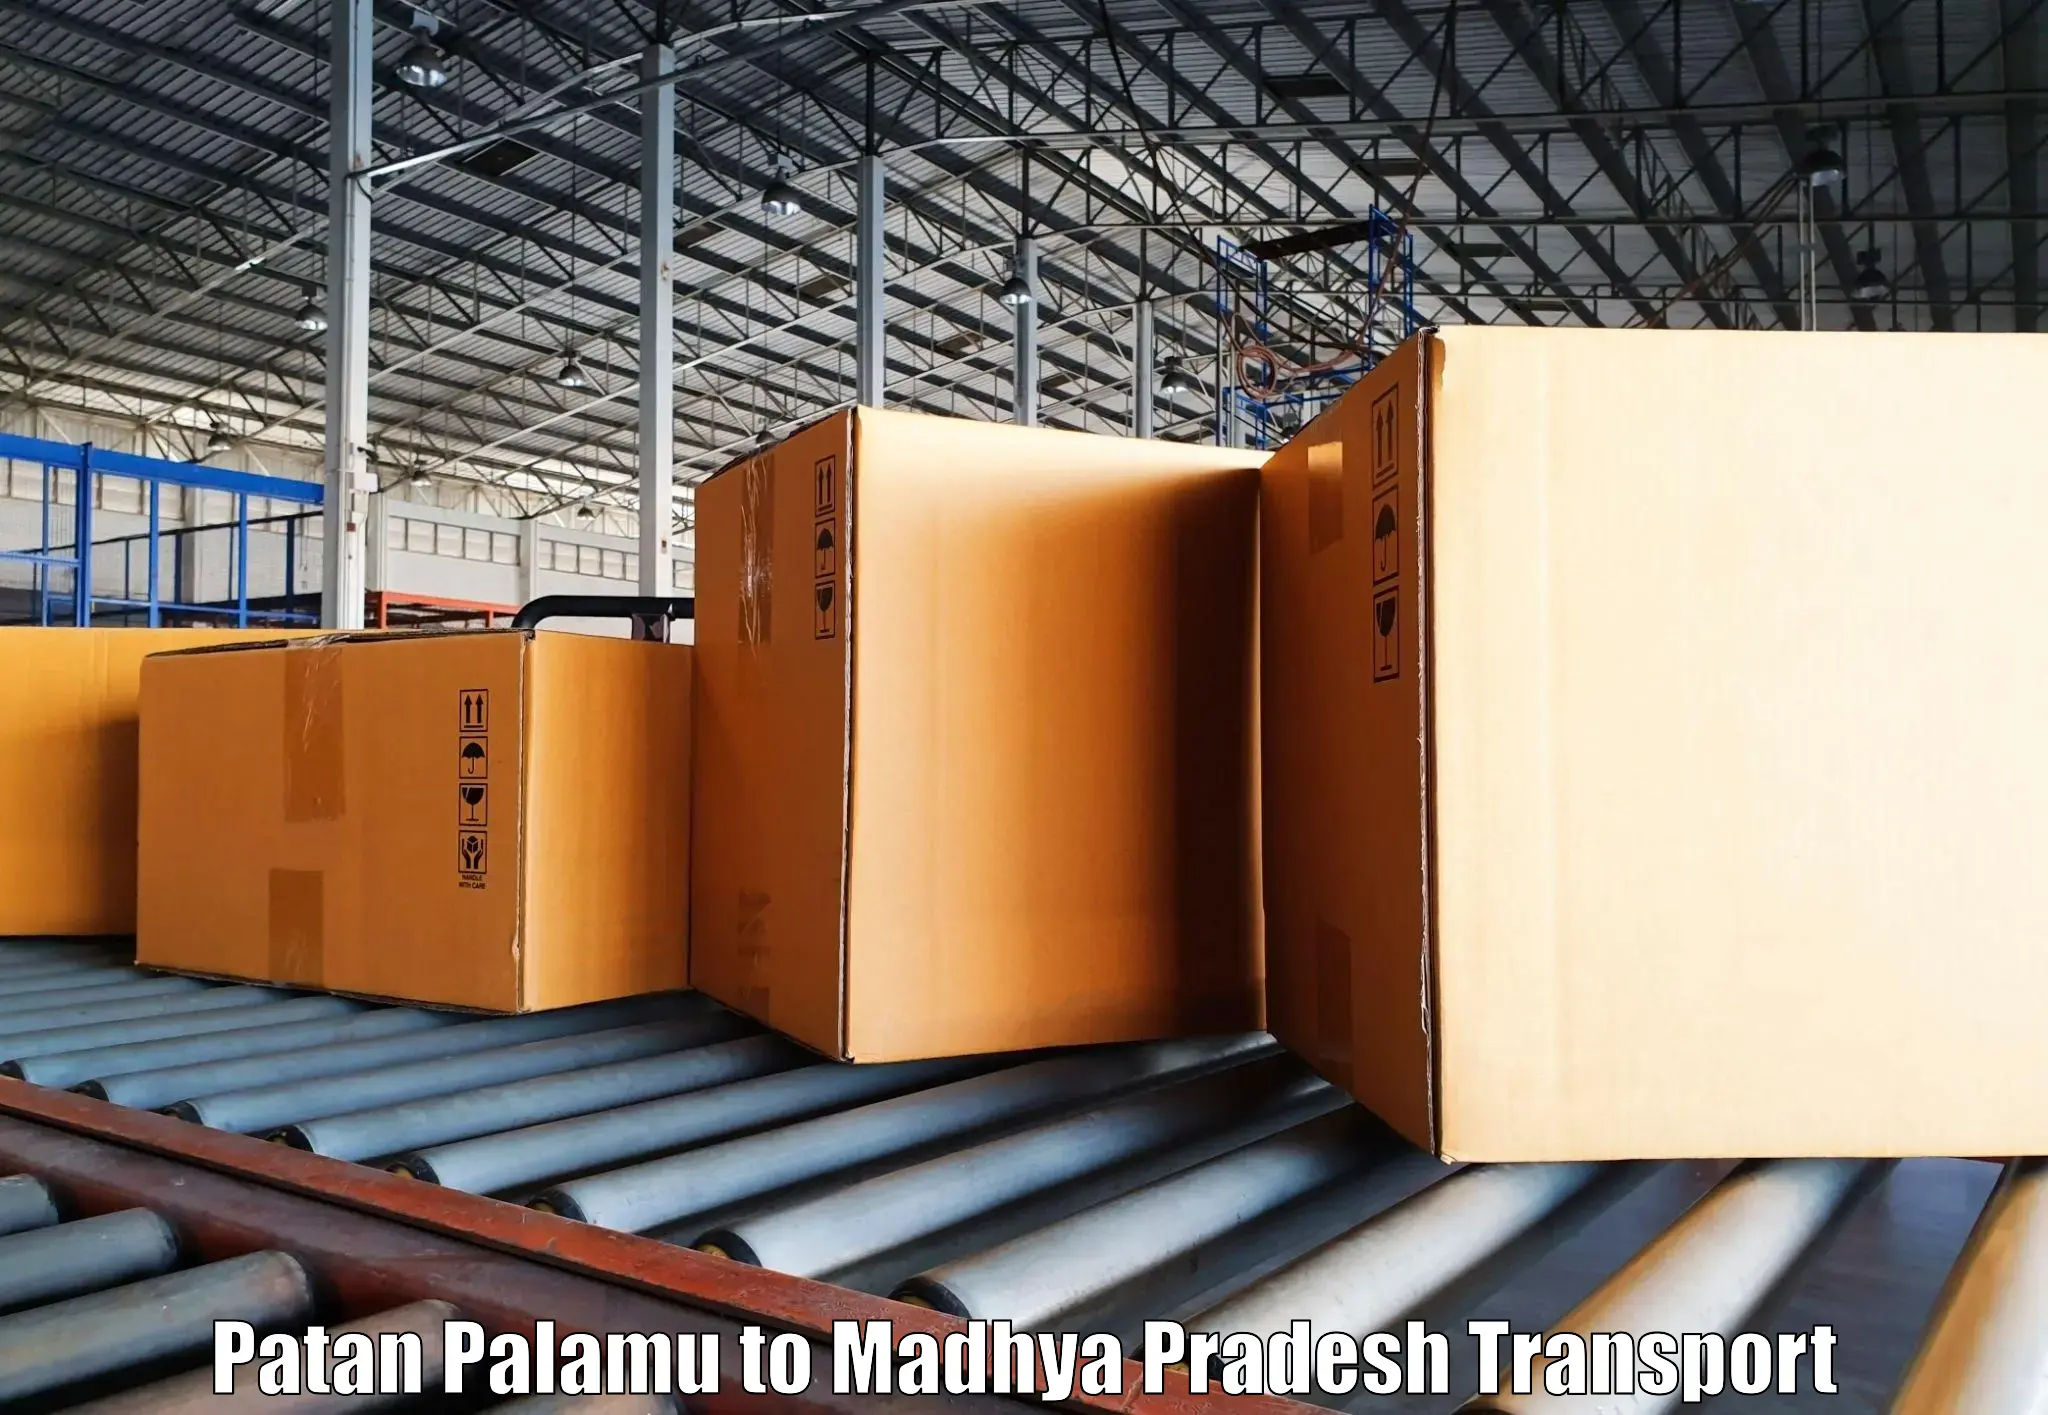 Two wheeler parcel service Patan Palamu to Ganj Basoda